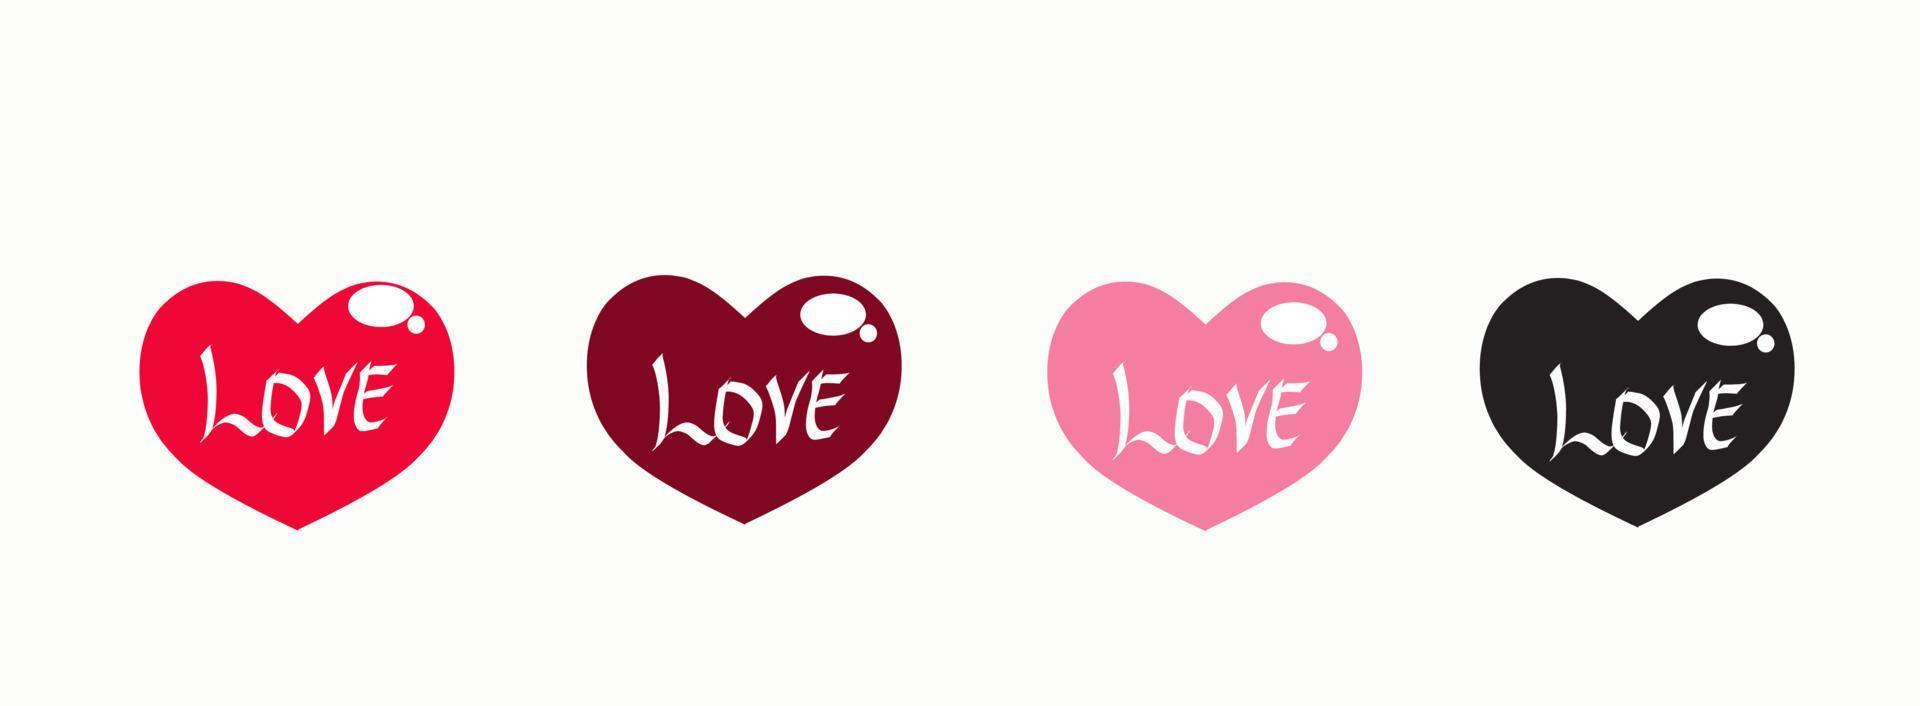 amo o vetor de ícone do coração. símbolos de amor de coleção romântica de ilustração criativa. conceito de amor. para dia dos namorados, dia das mães, casamento, amor e eventos românticos